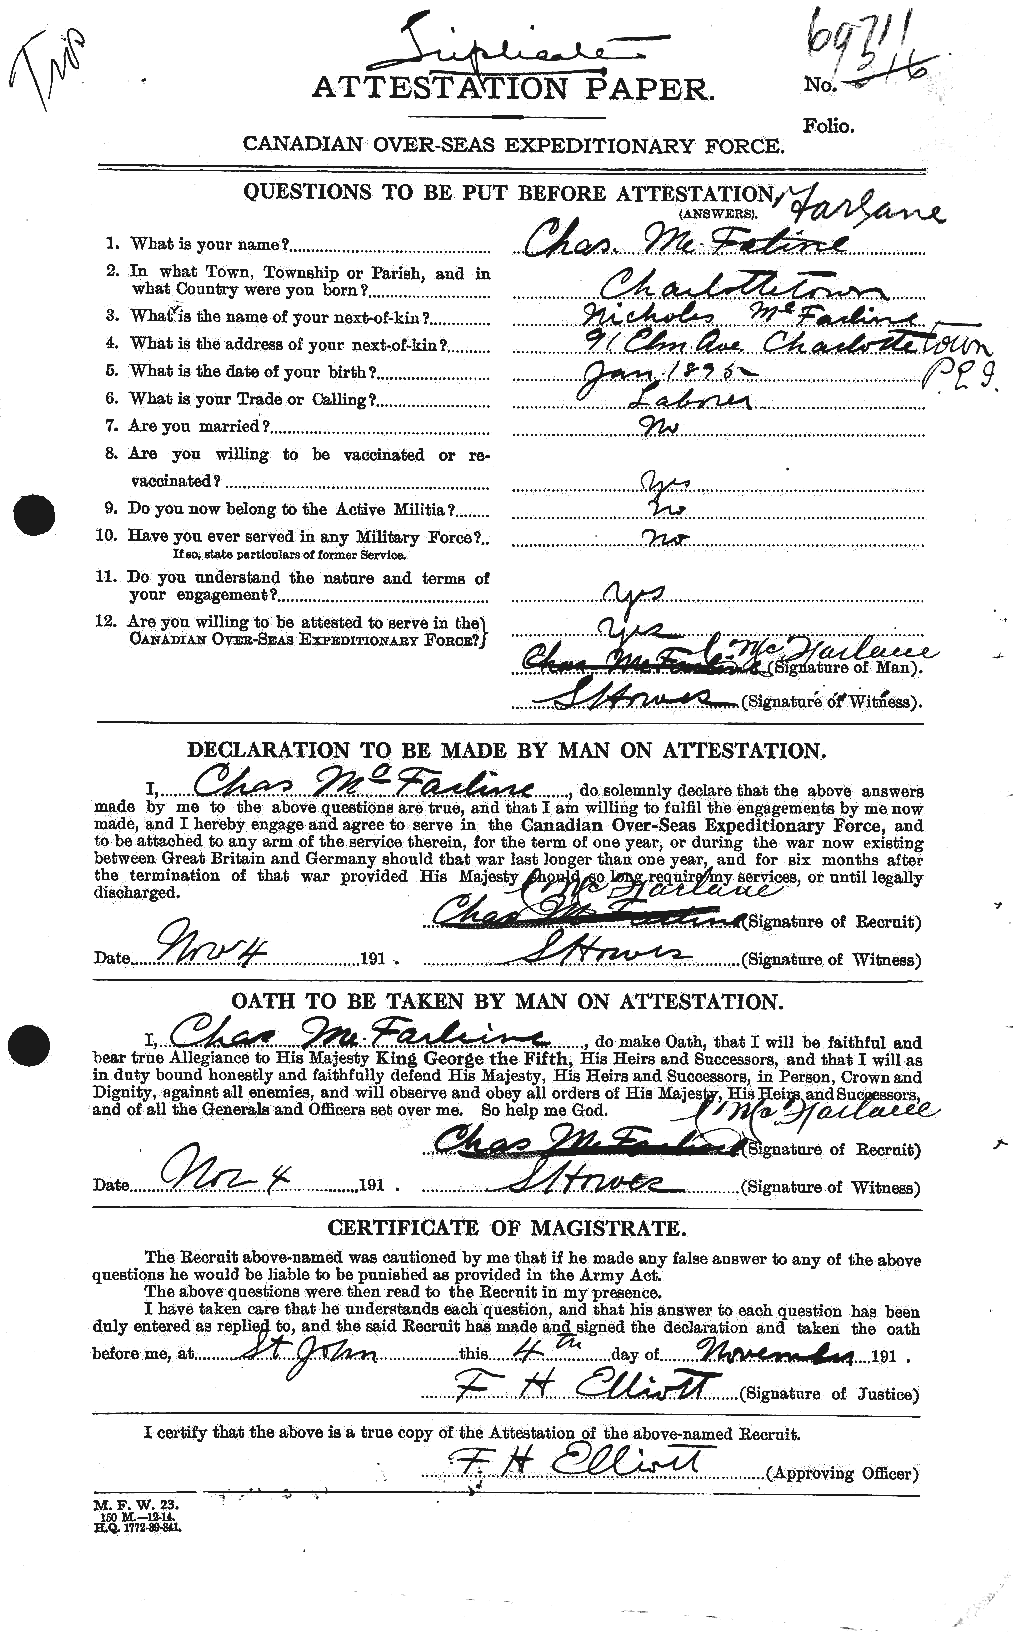 Dossiers du Personnel de la Première Guerre mondiale - CEC 521735a